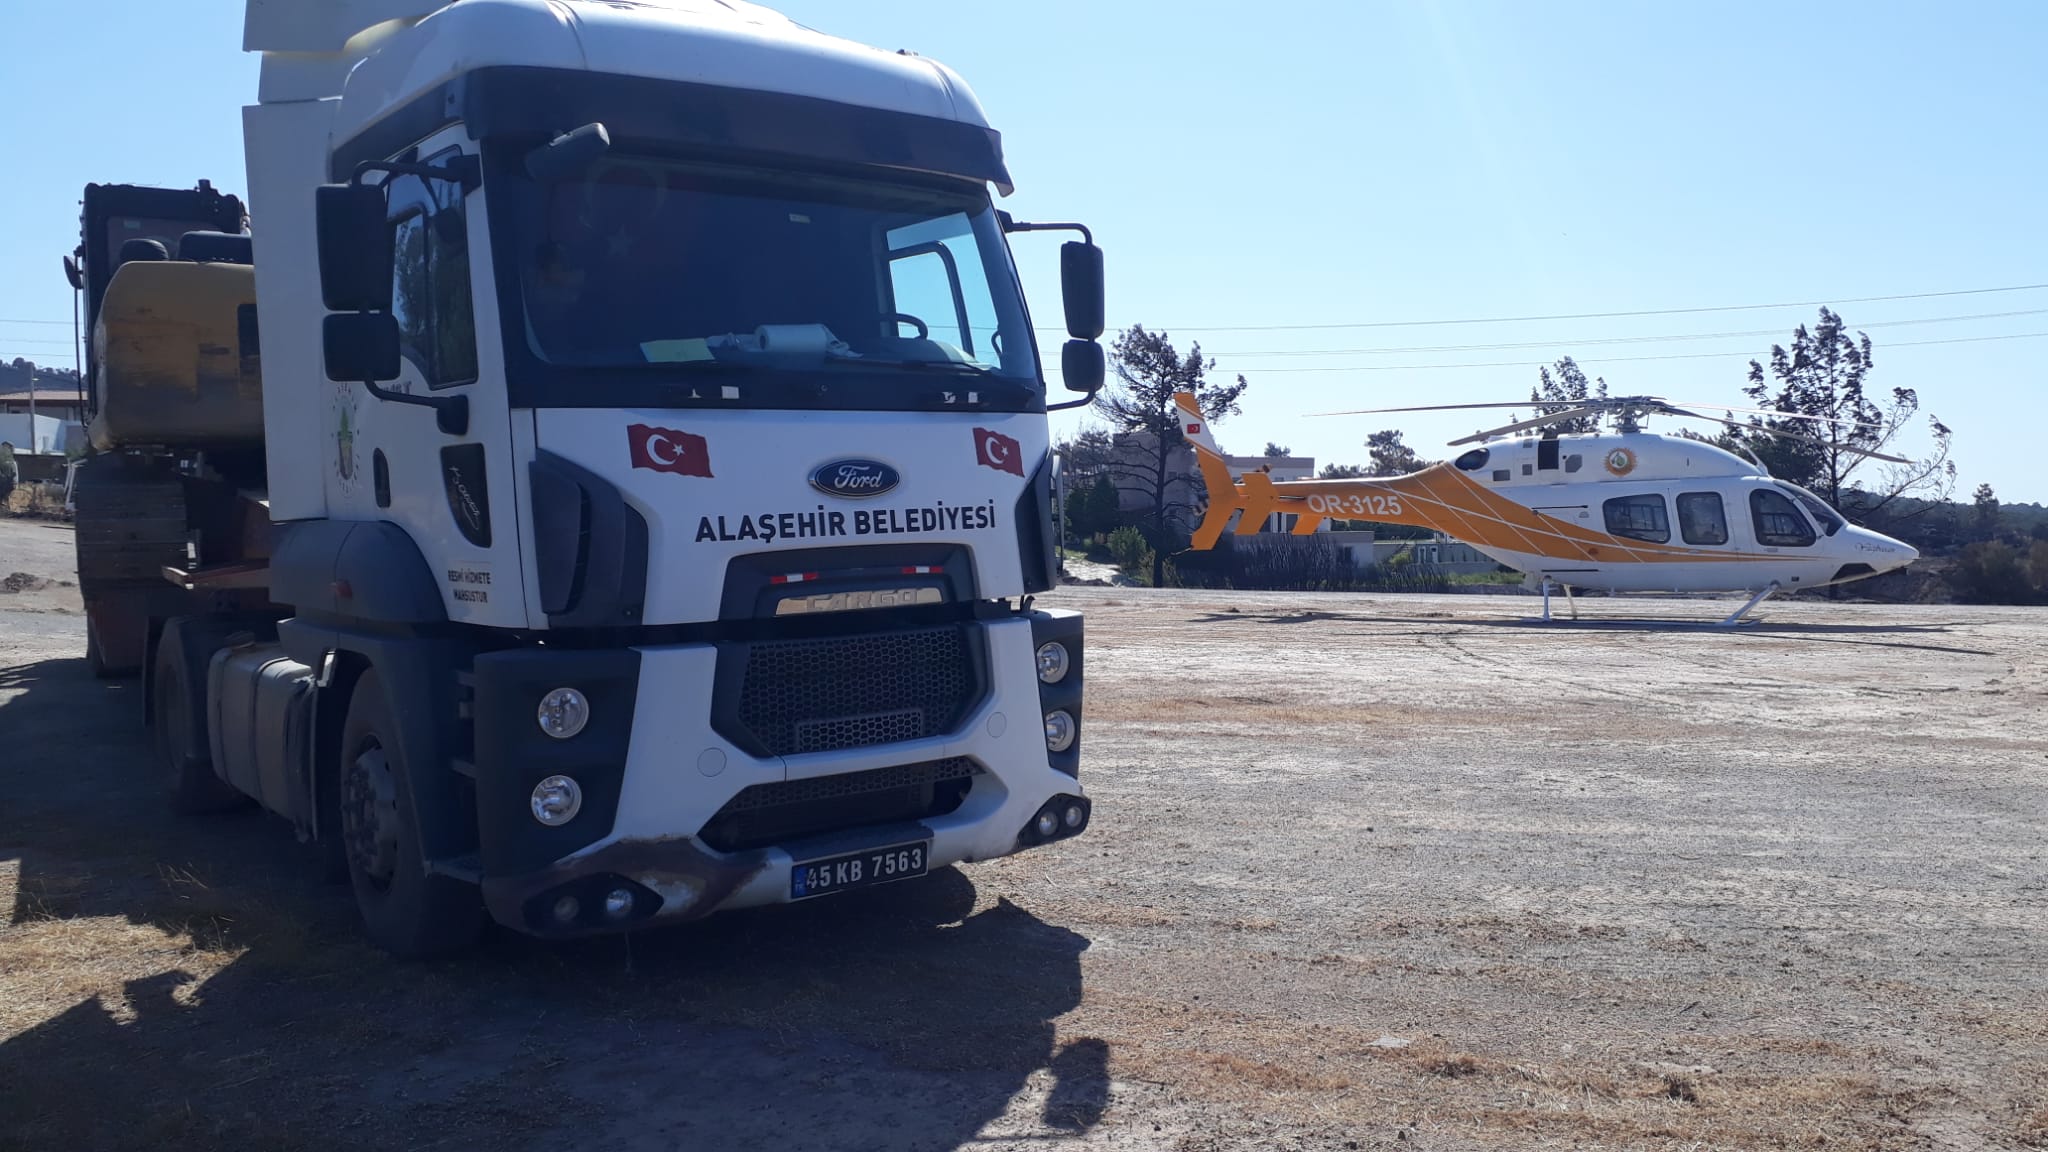 Sarıgöl-Denizli-Buldan sınırında meydana gelen yangın için Alaşehir Belediyesi araçlarımızı bölgeye gönderdik.